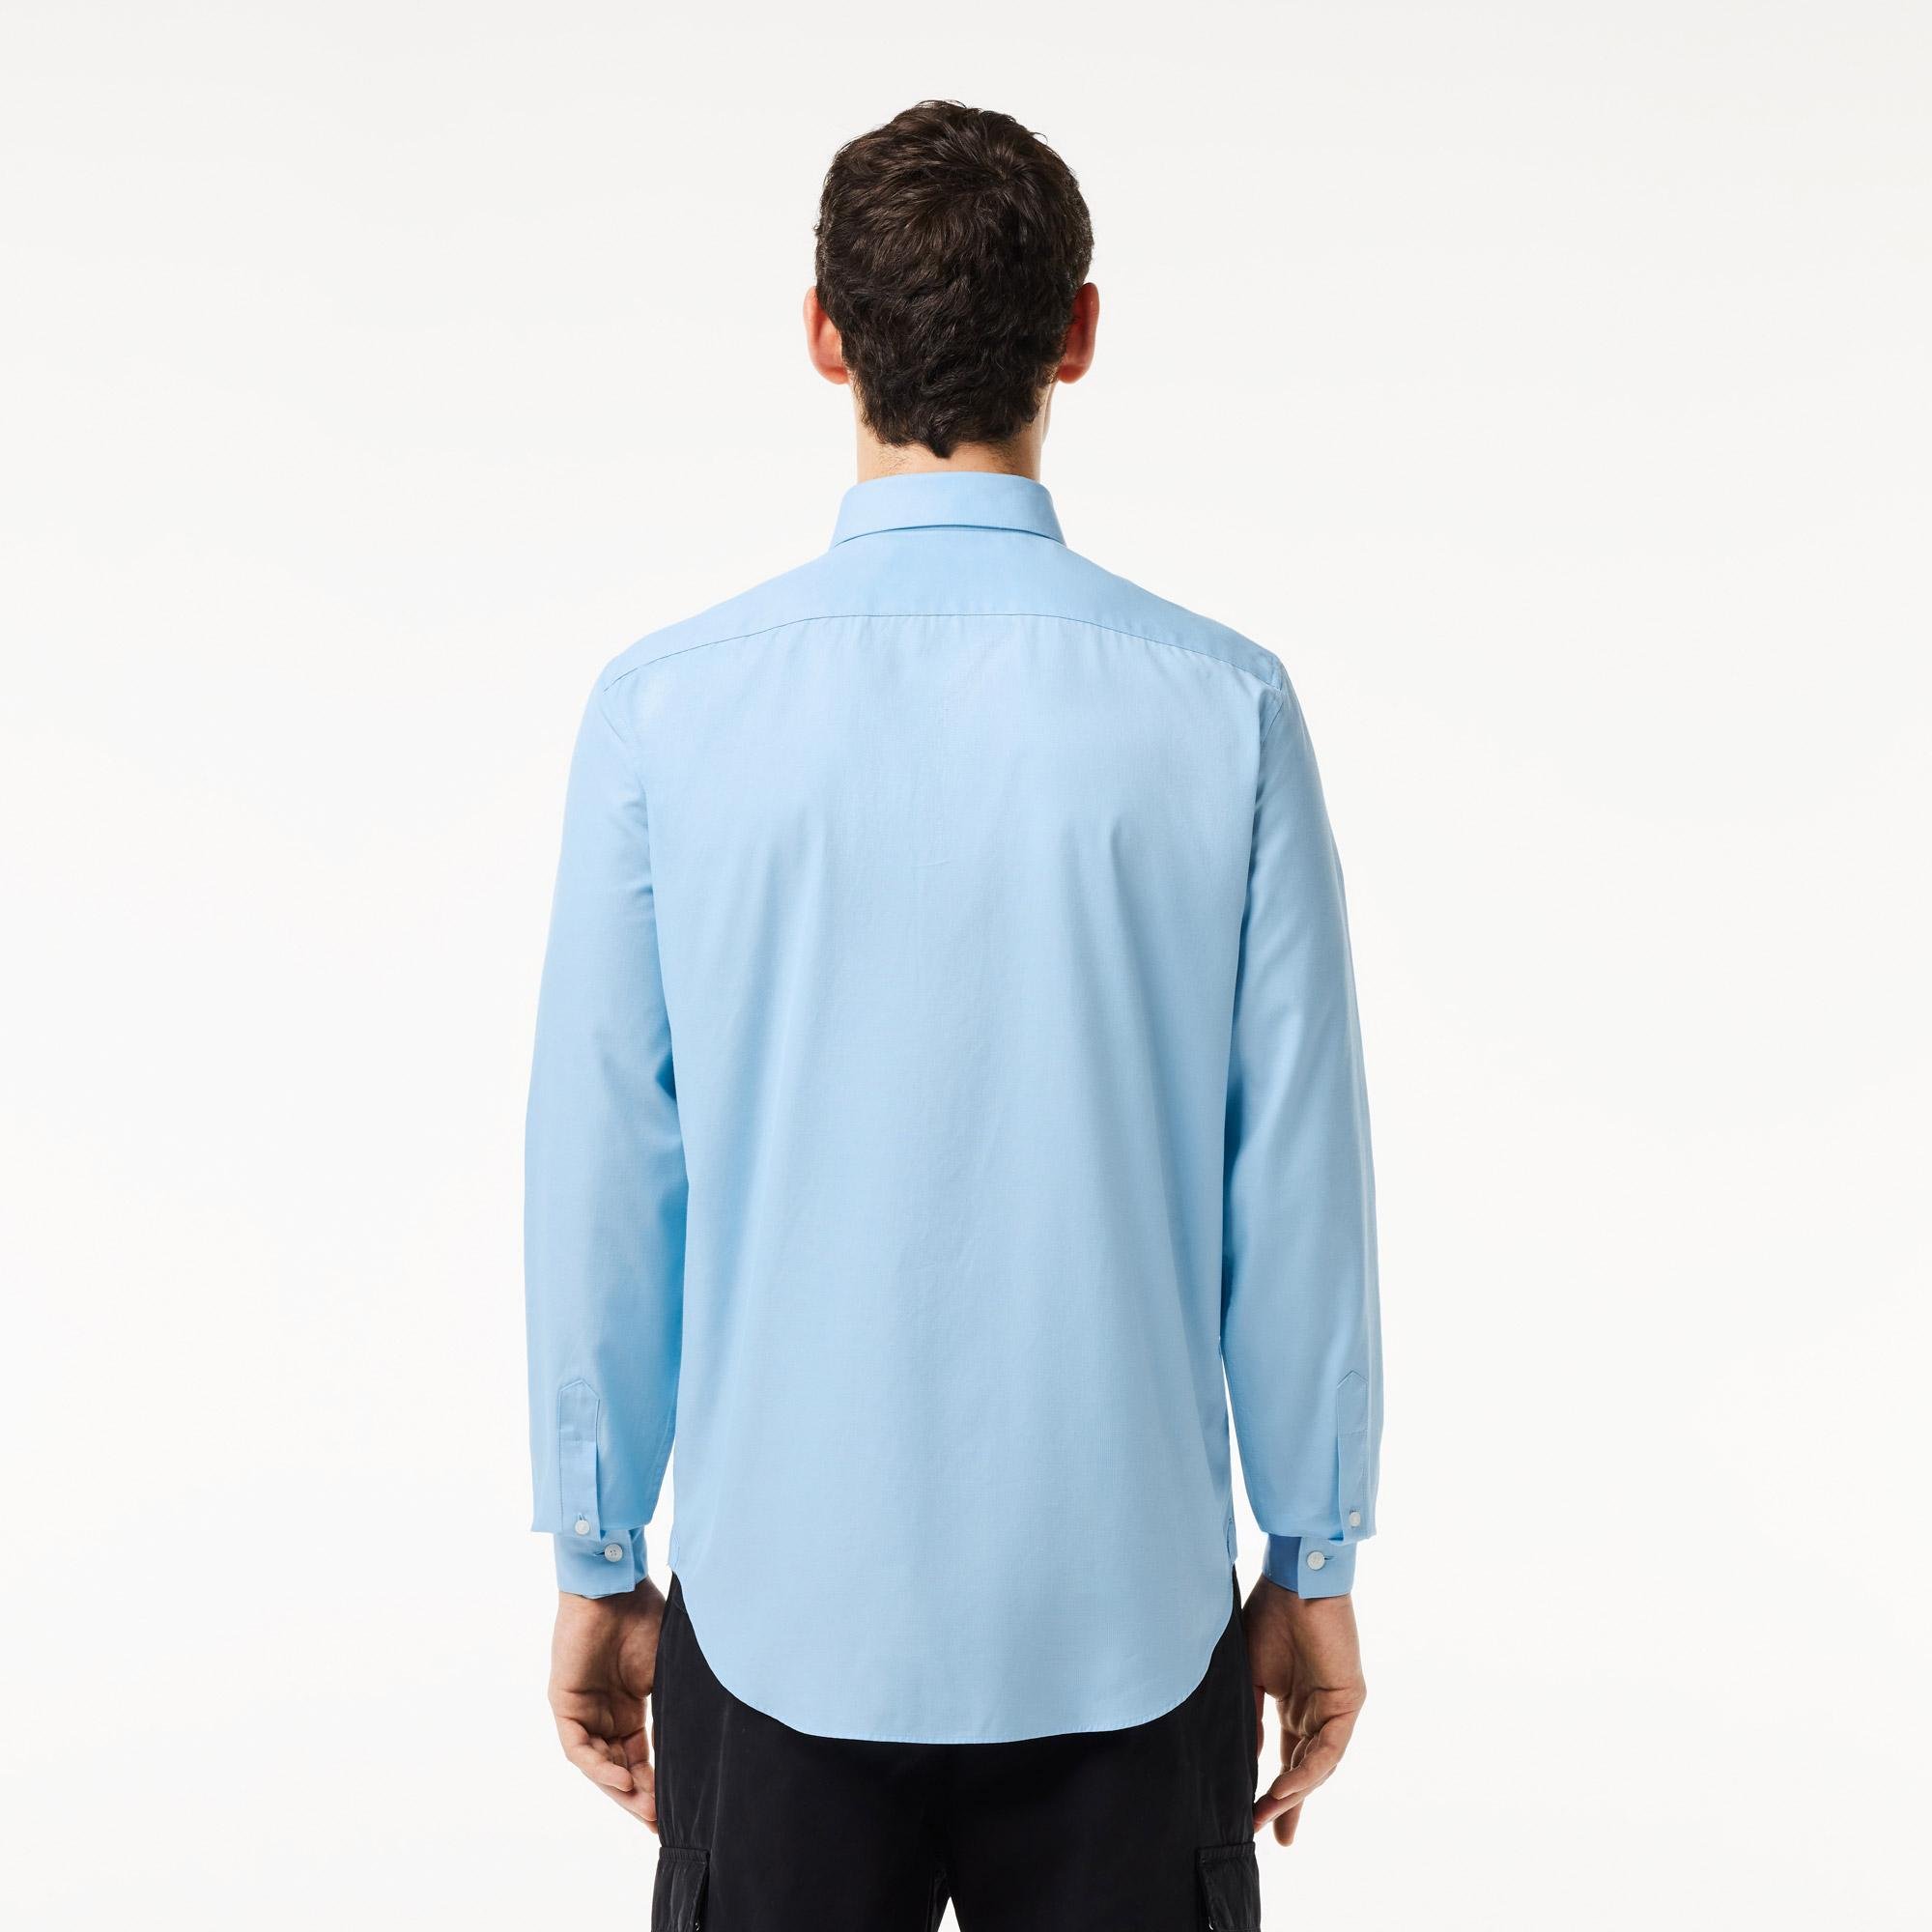 Lacoste Men's Regular Fit Solid Cotton Shirt